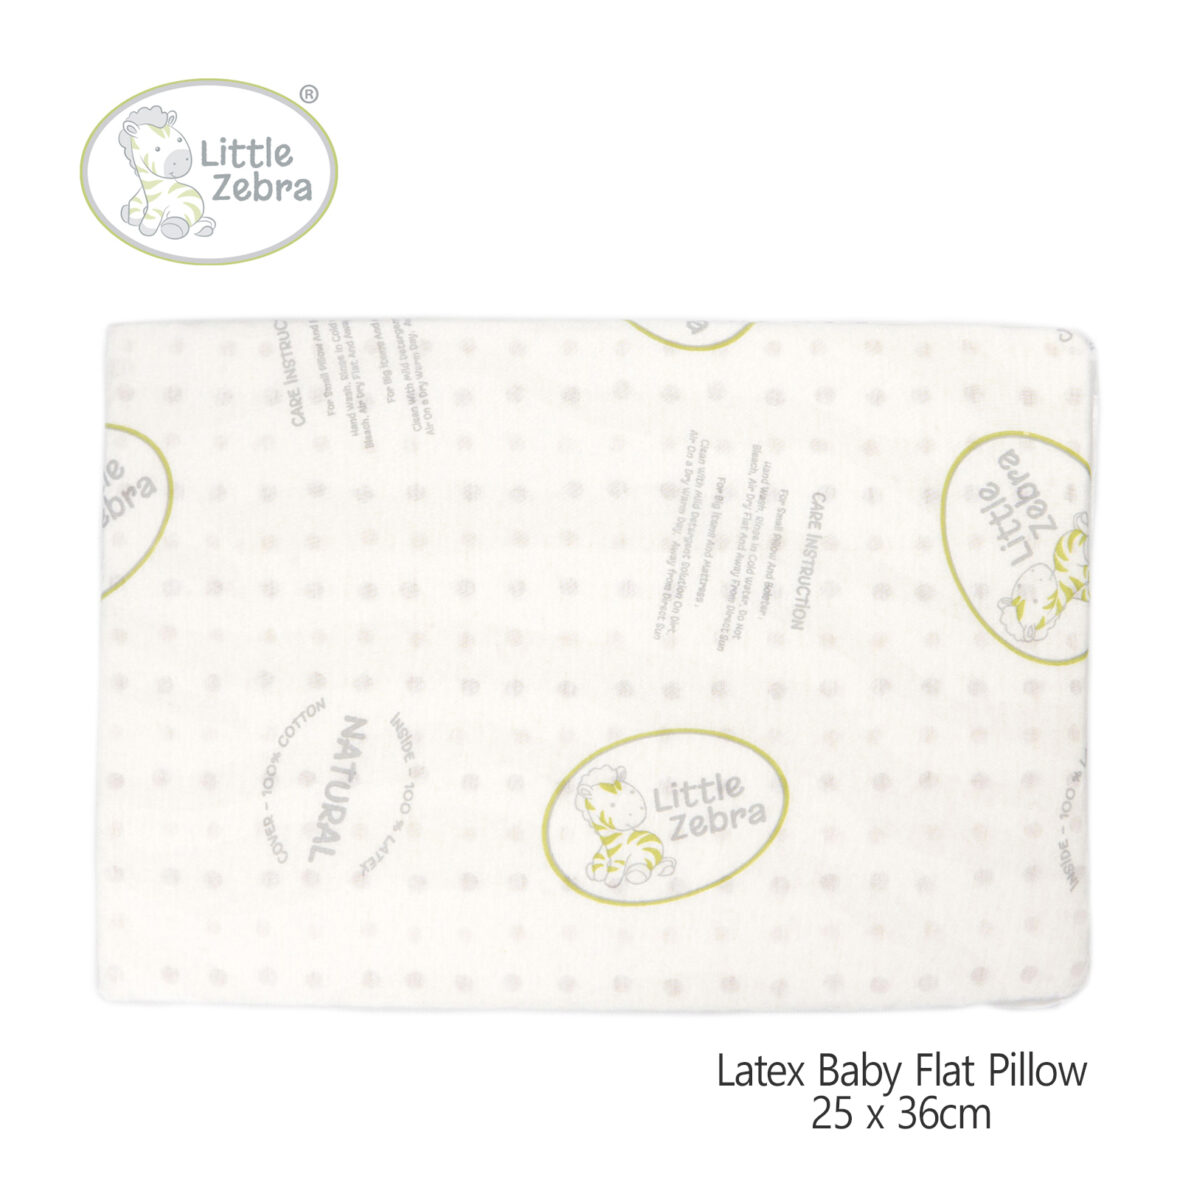 Little Zebra Latex Baby Flat Pillow